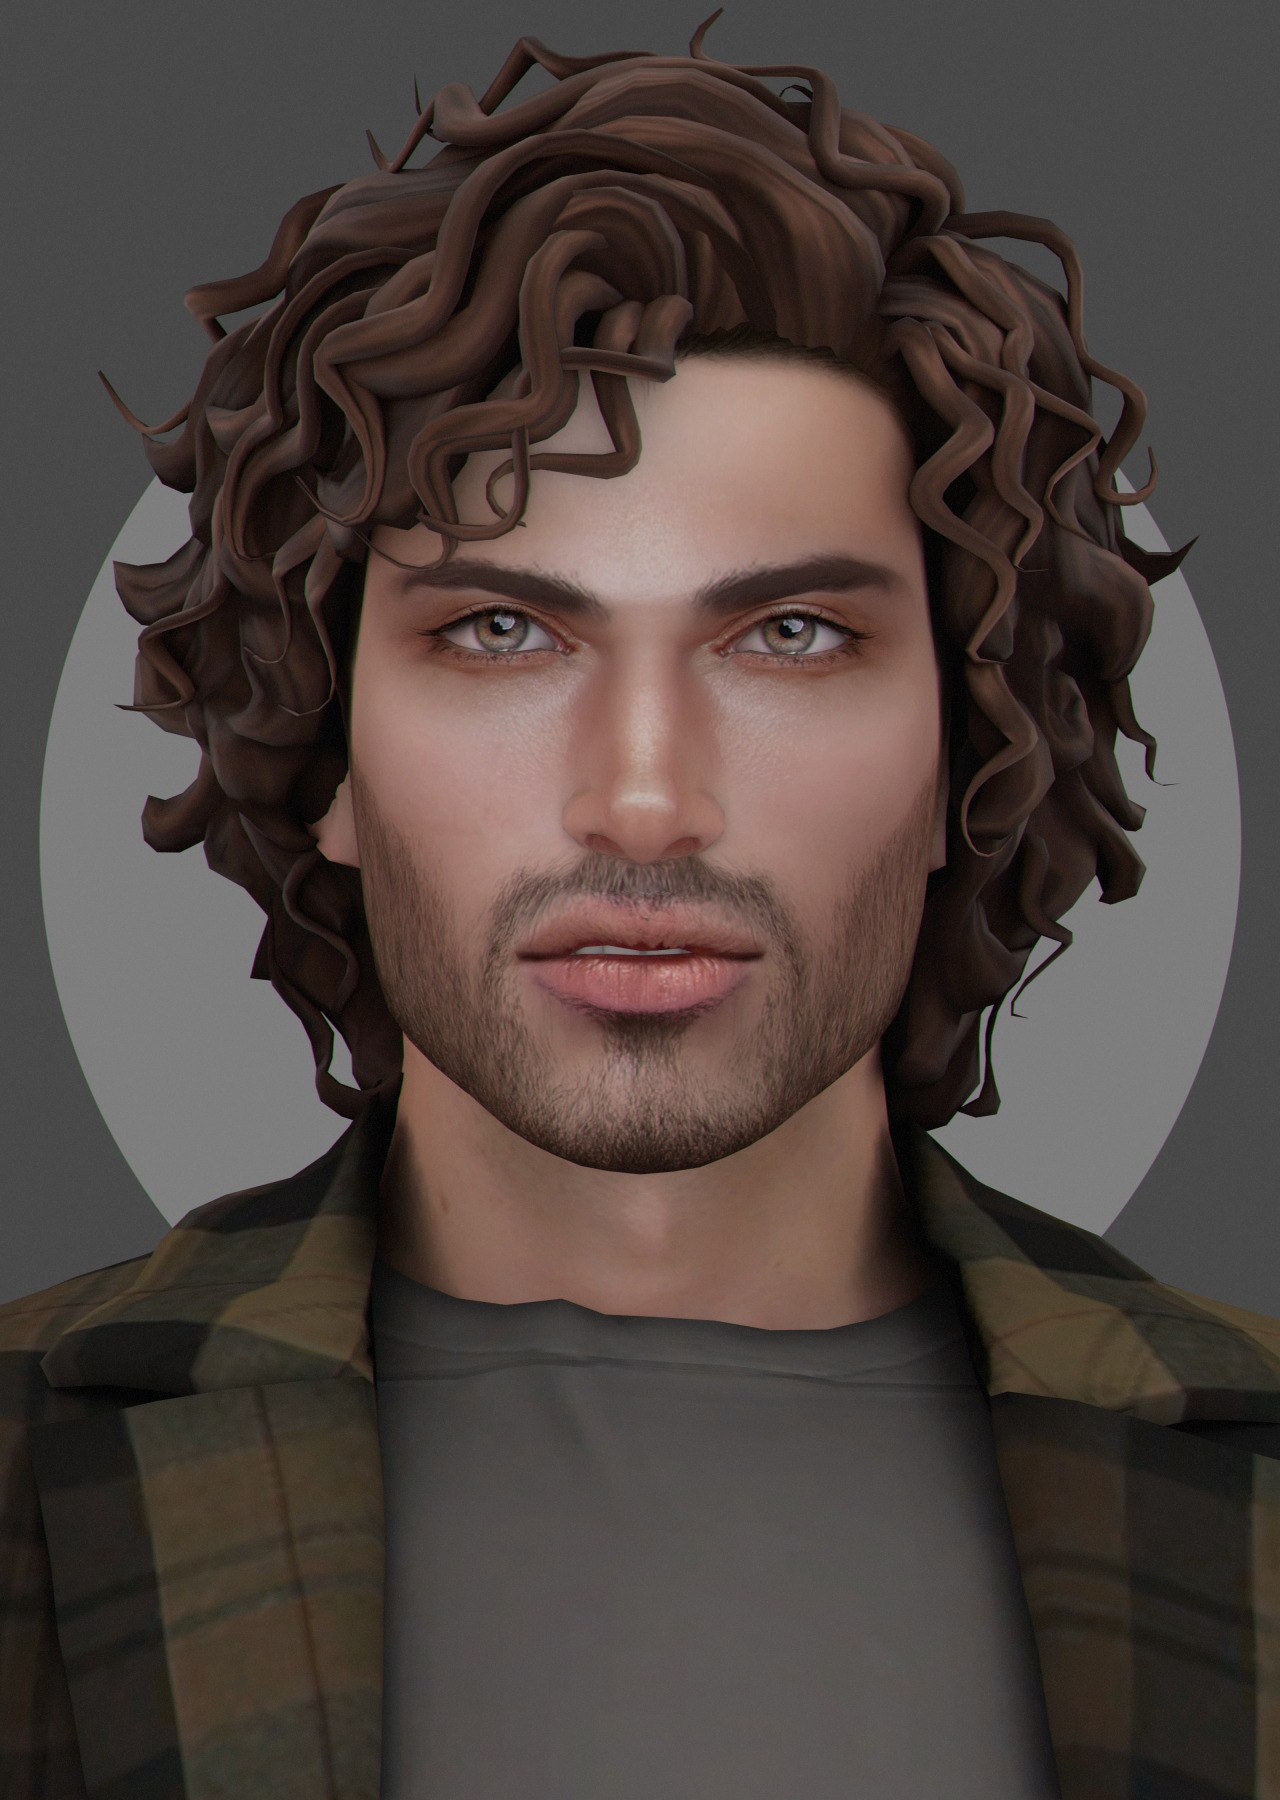 Sims 4 facial hair cc tumblr - cfret